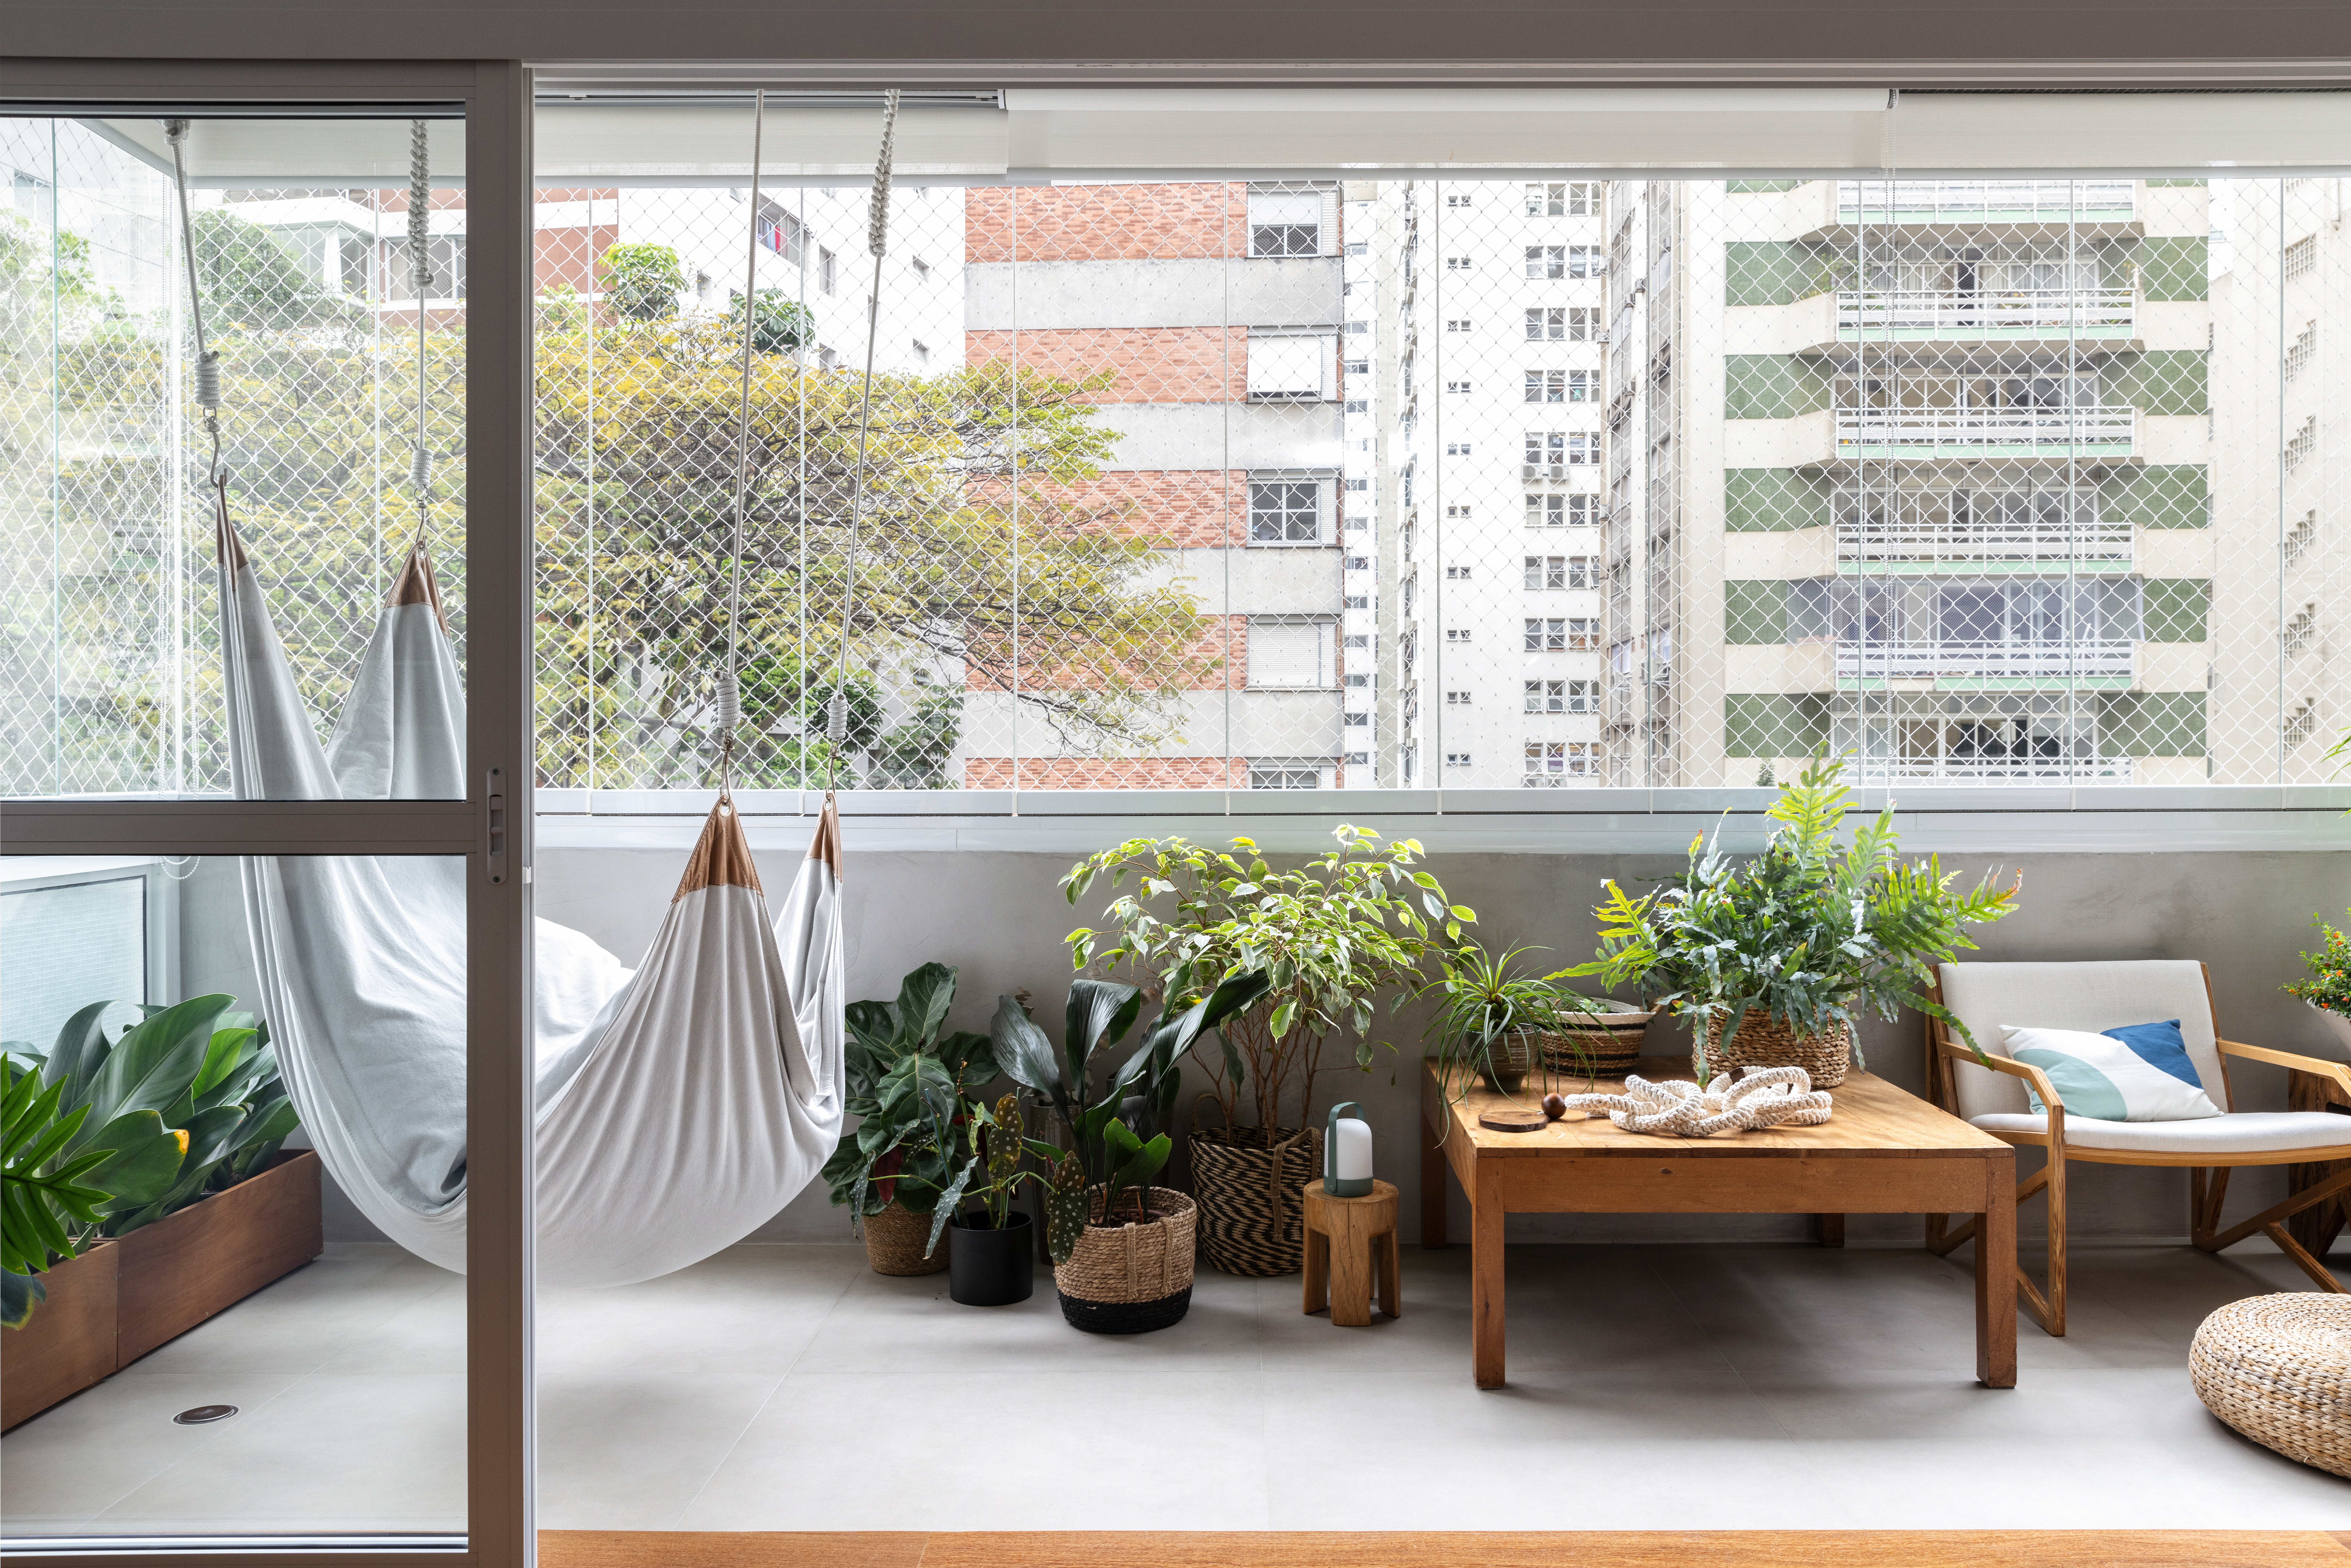 Com paleta branca, apê de 240 m² tem porta de correr inspirada em biombos. Projeto de Lucia Manzano. Na foto, varanda, plantas, balanço.